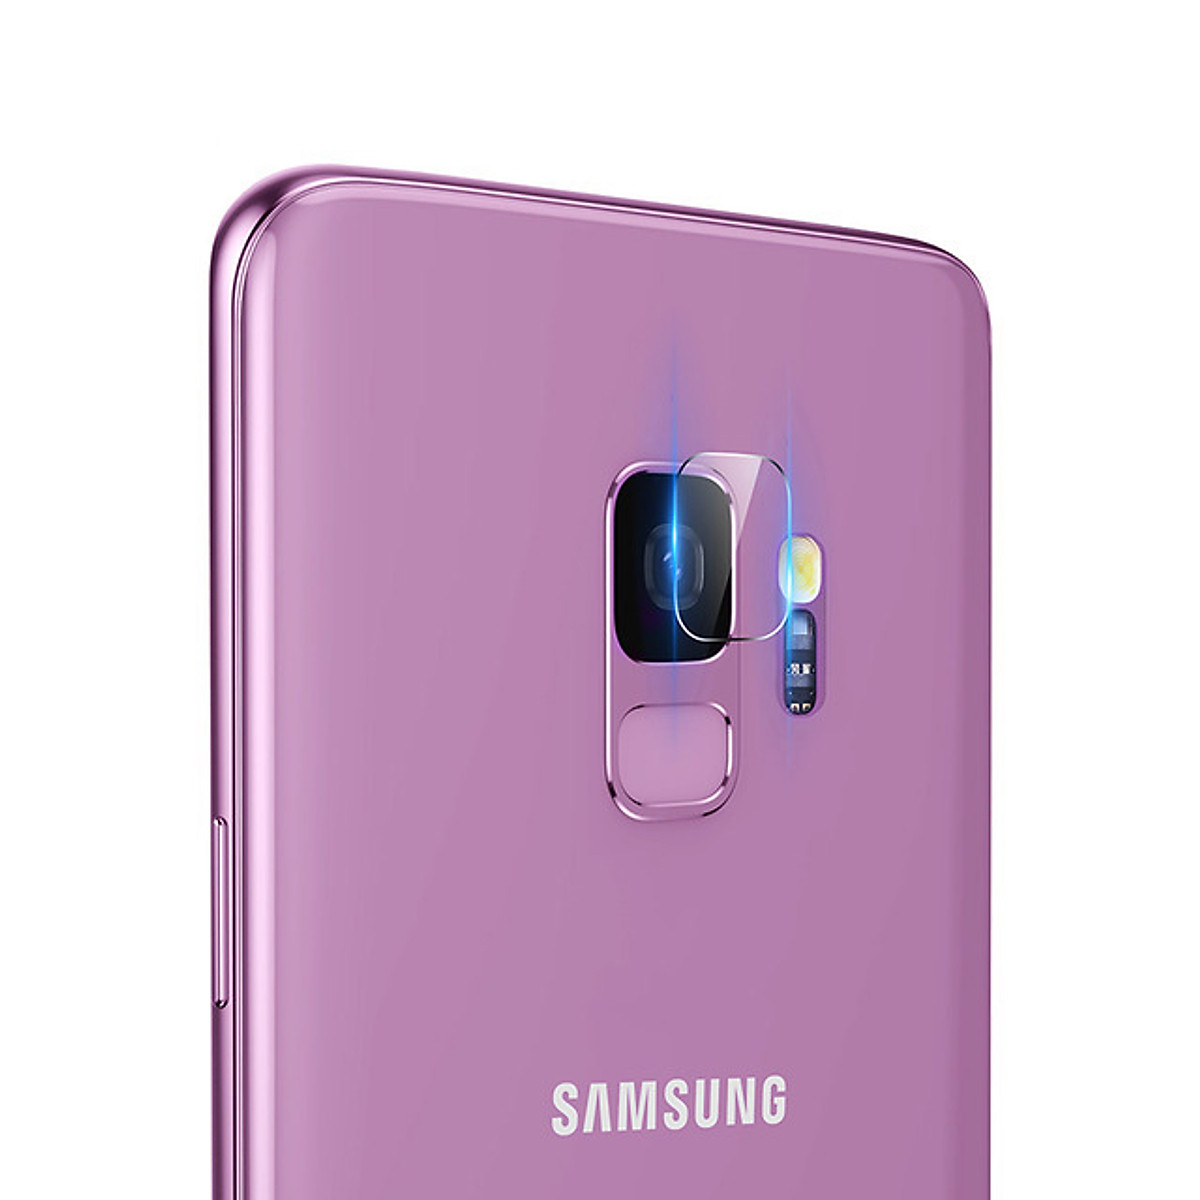 Miếng dán kính cường lực camera cho Samsung Galaxy S9 hiệu Baseus